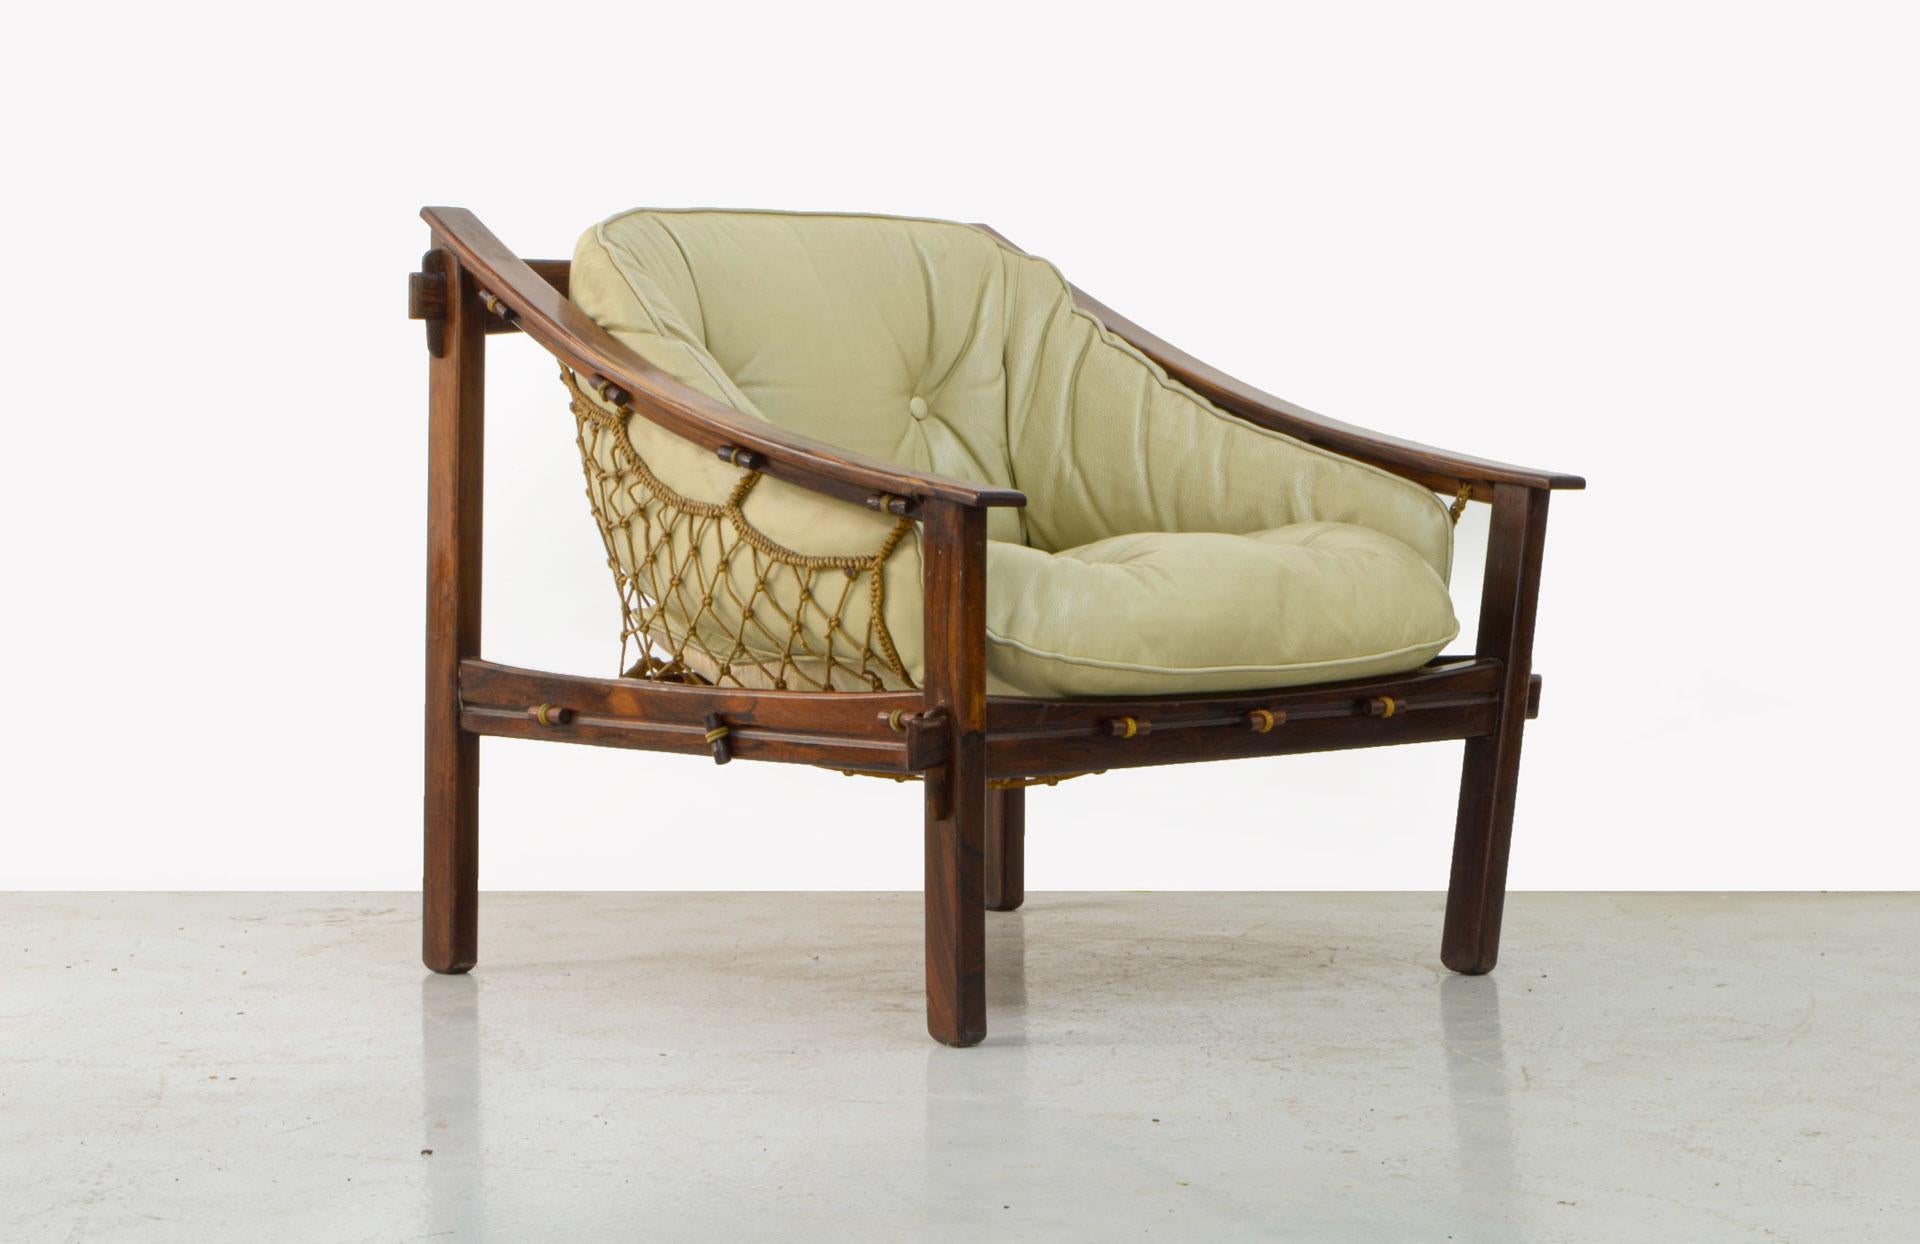 20th Century Amazonas Lounge Chair, Solid Jacaranda Rosewood, Brazilian Midcentury